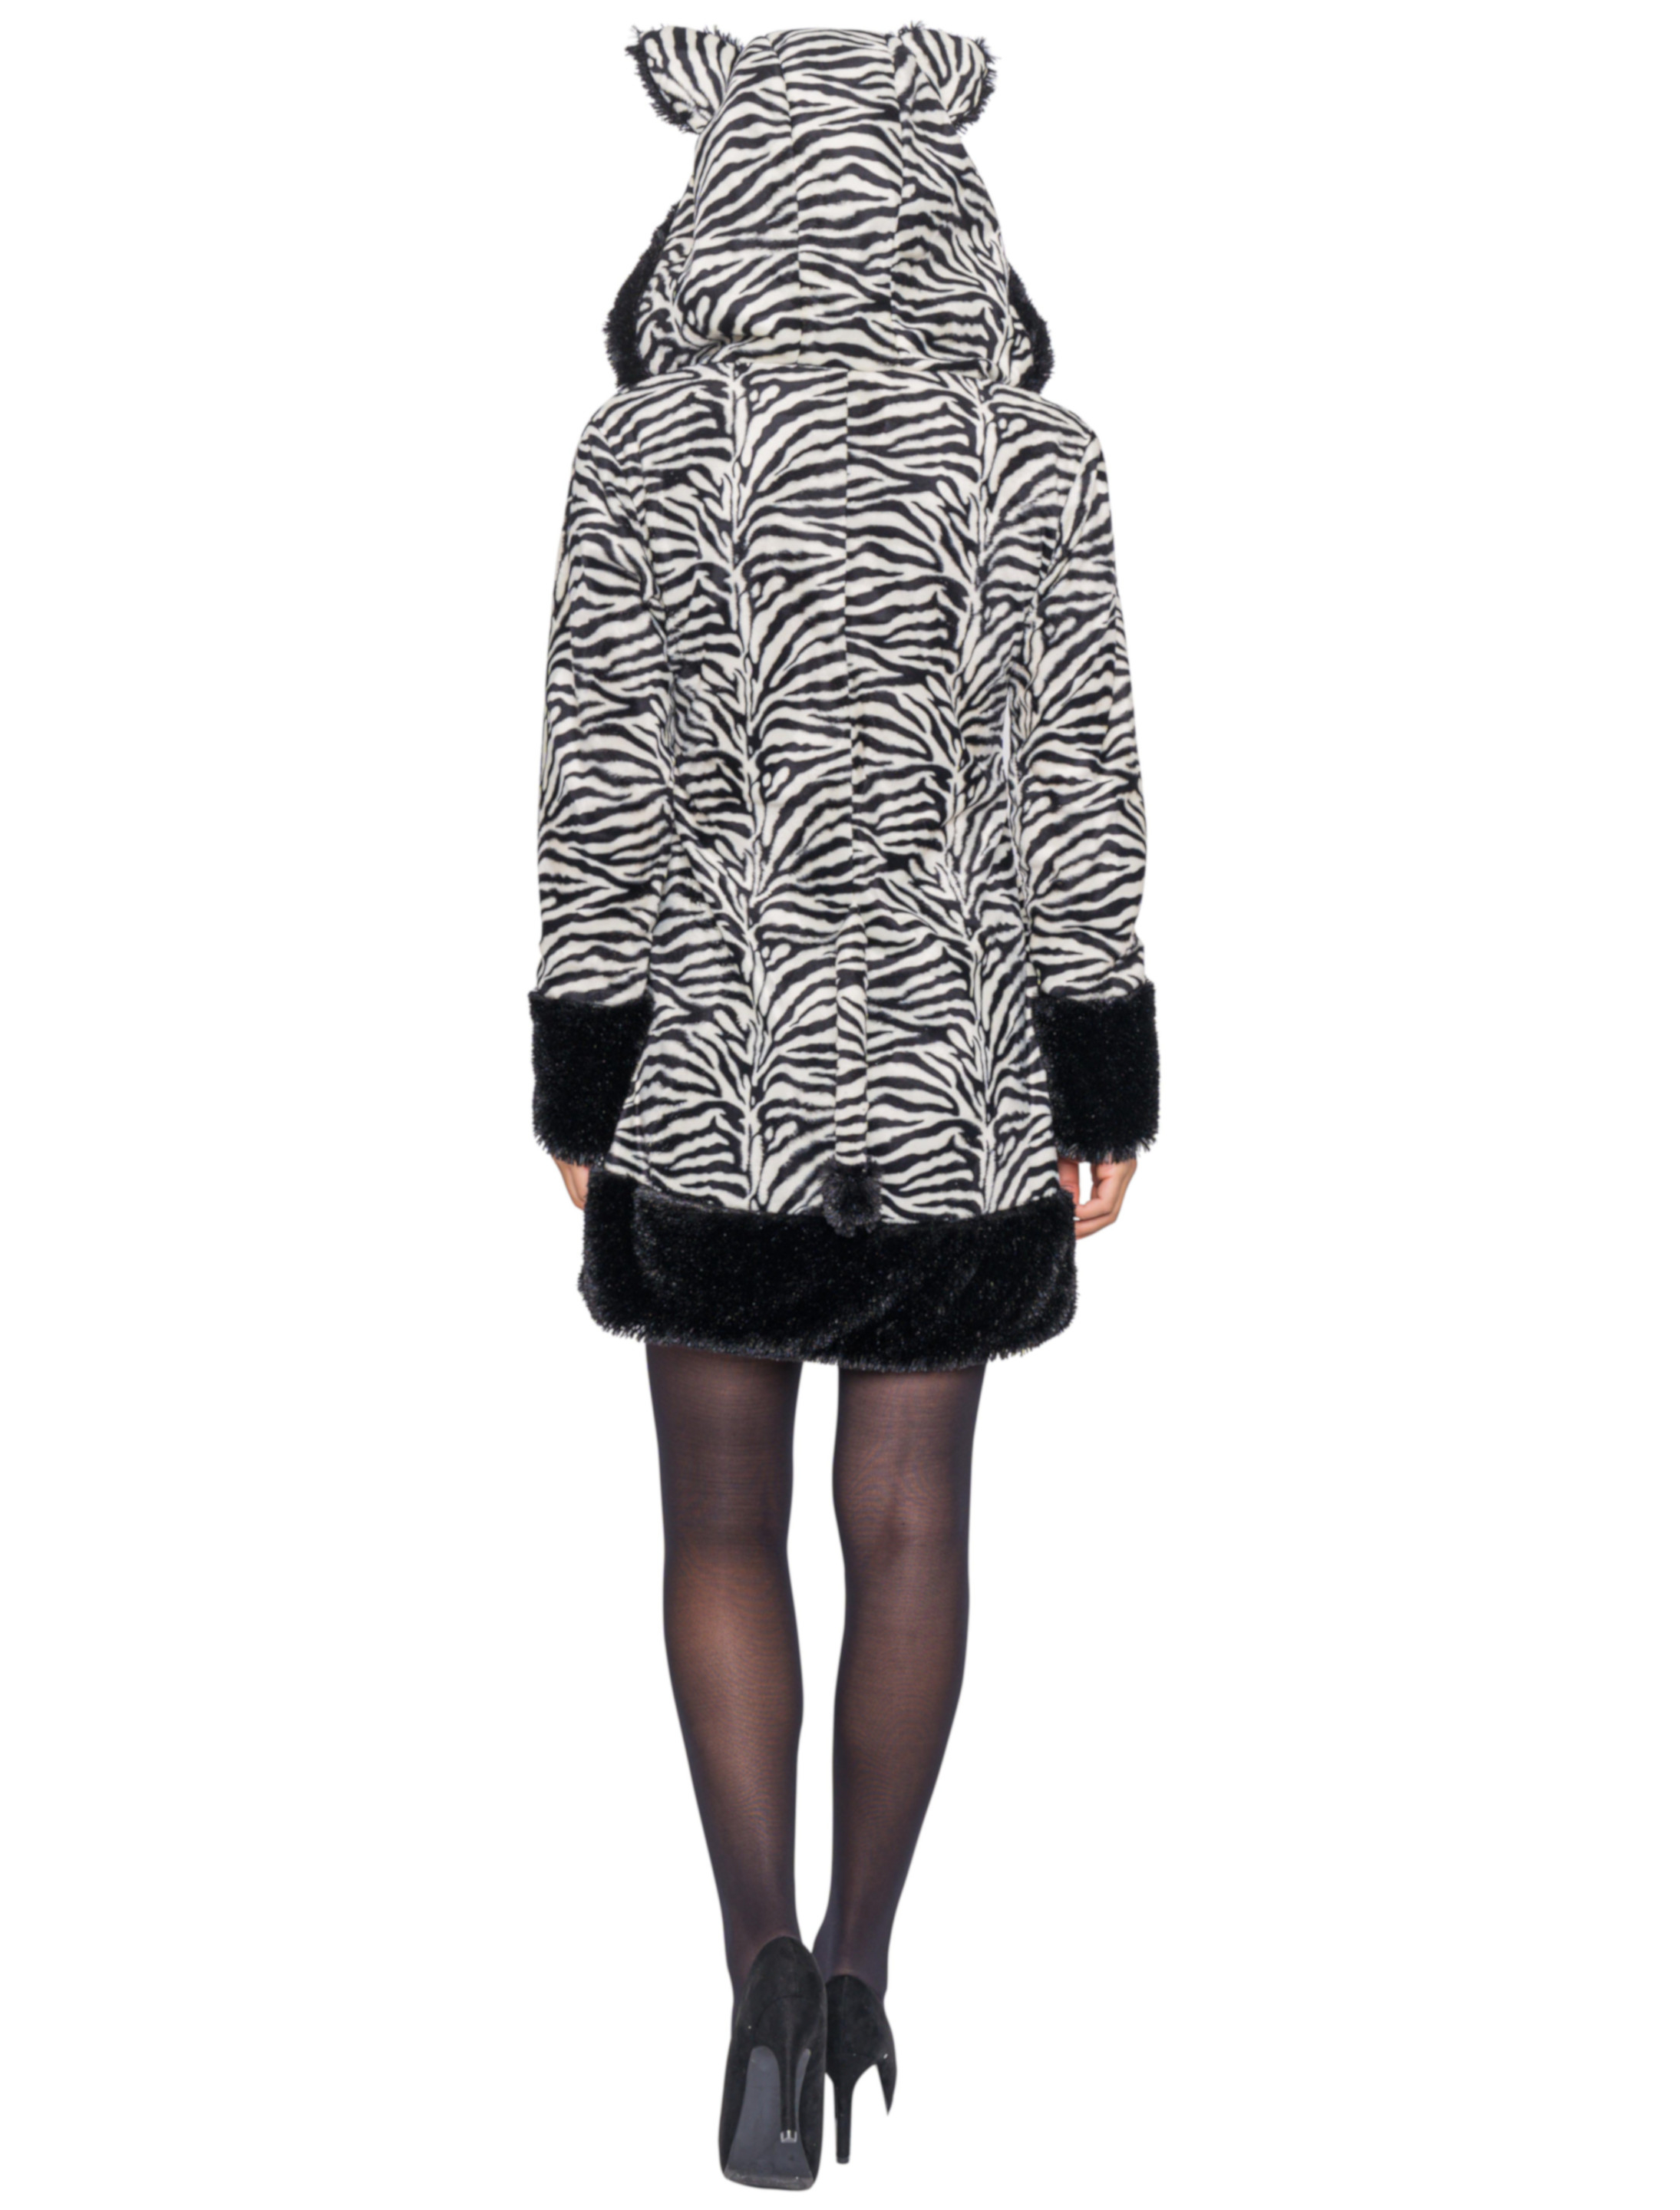 Kleid Plüsch Zebra Damen schwarz/weiß 44